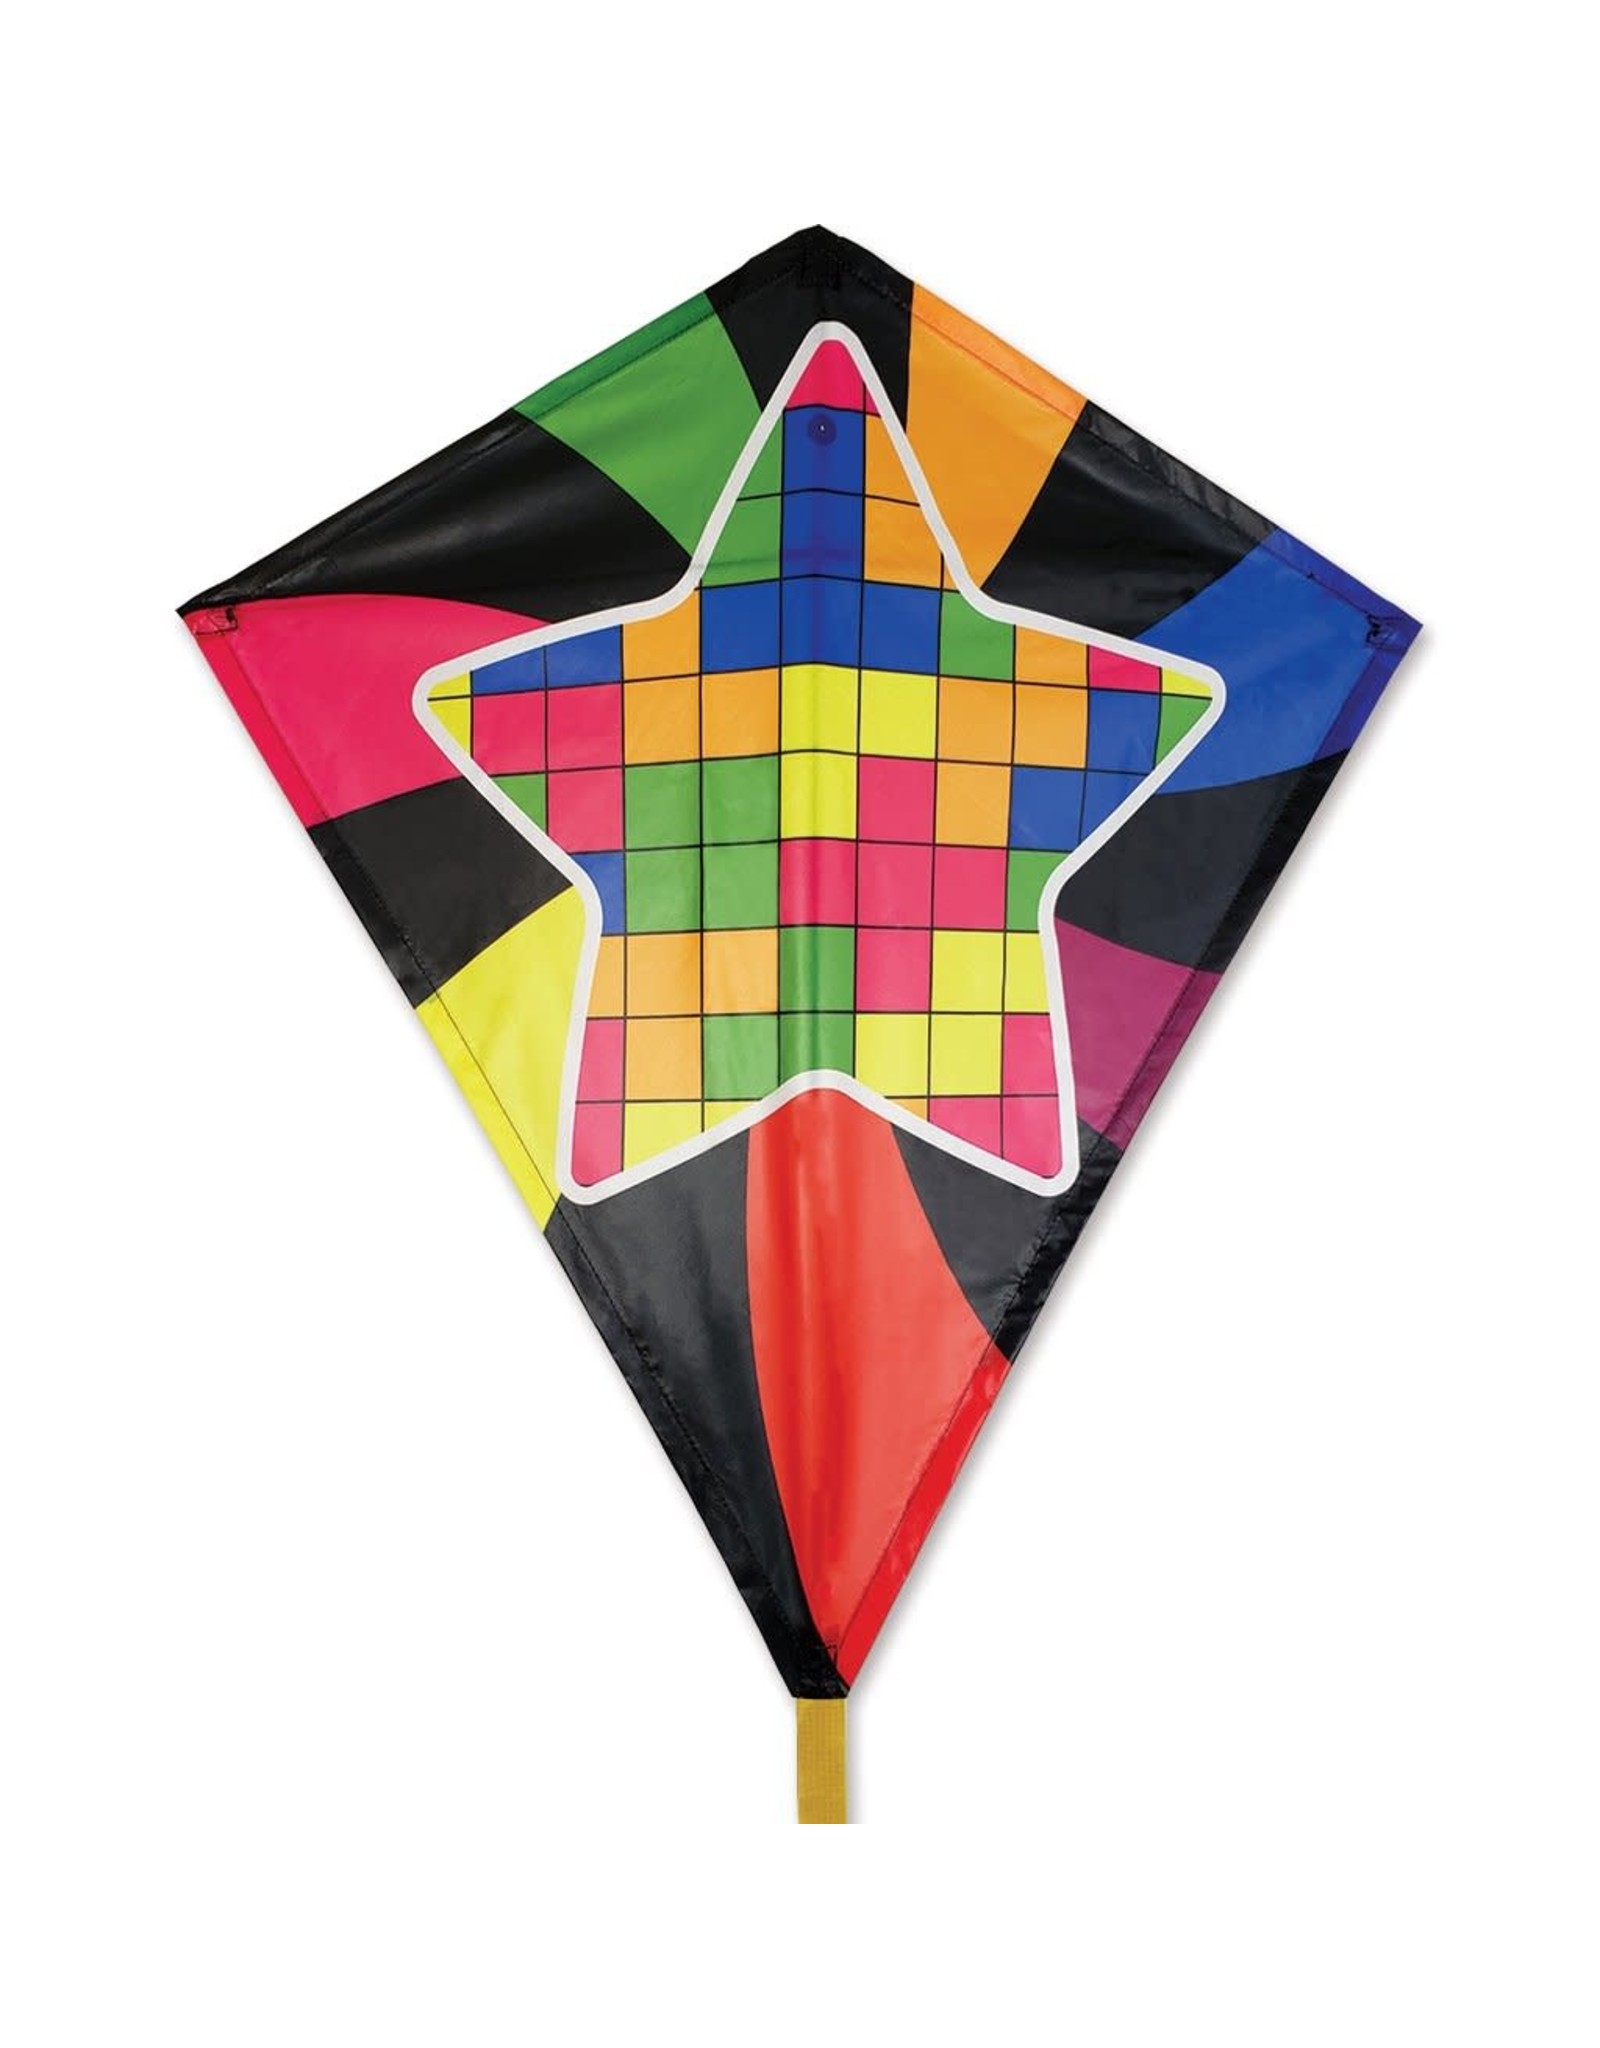 Premier Kites 30 in Diamond Kite: Star Blocks